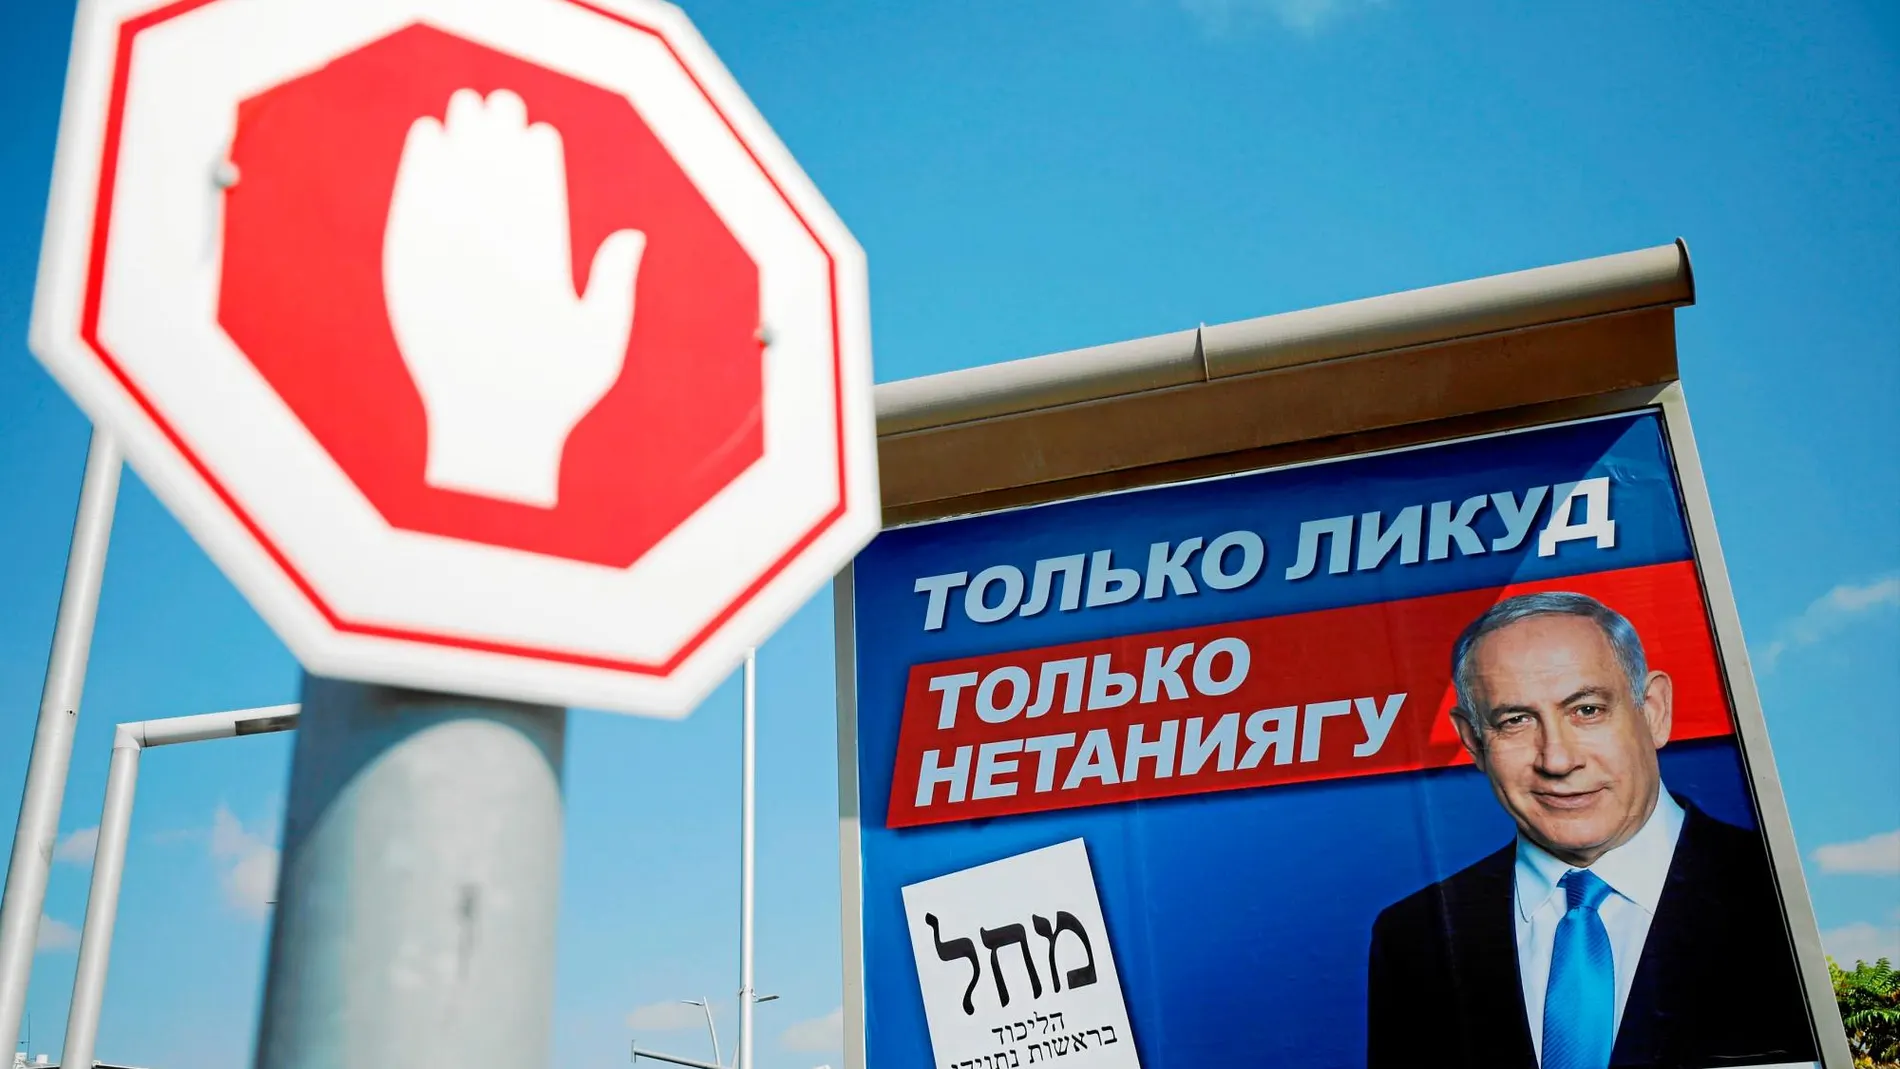 Un cartel electoral del partido Likud escrito en ruso cerca de una señal de tráfico en Ashdod, Israel